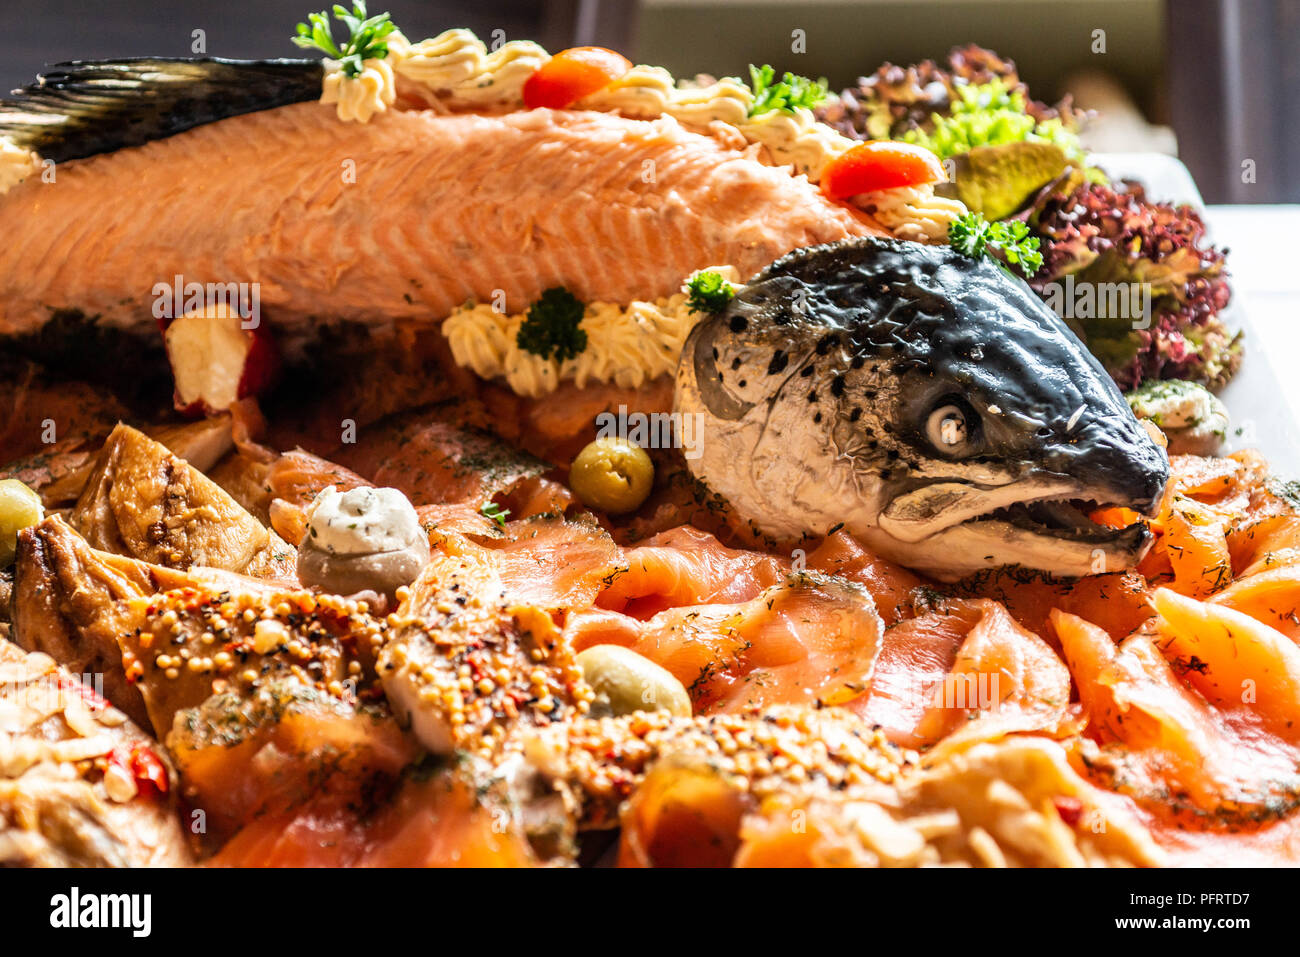 Lecker big fish Platte mit kompletten fishbody und Lachs Steak mit Gemüse auf weiße Platte Tabelle Ansicht von oben. Stockfoto